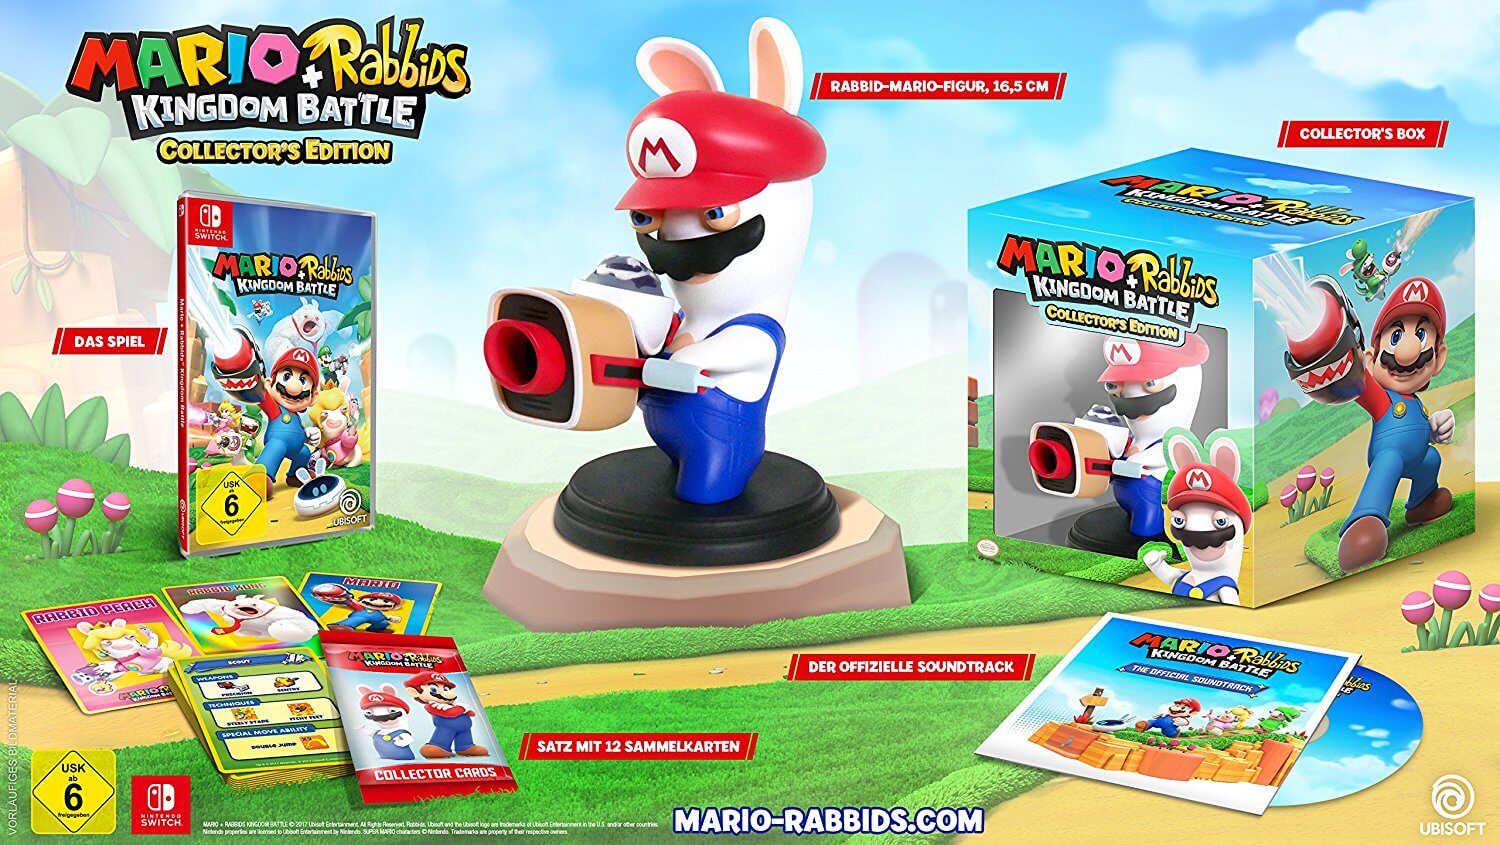 Mario + Rabbids Kingdom Battle Collector's Edition